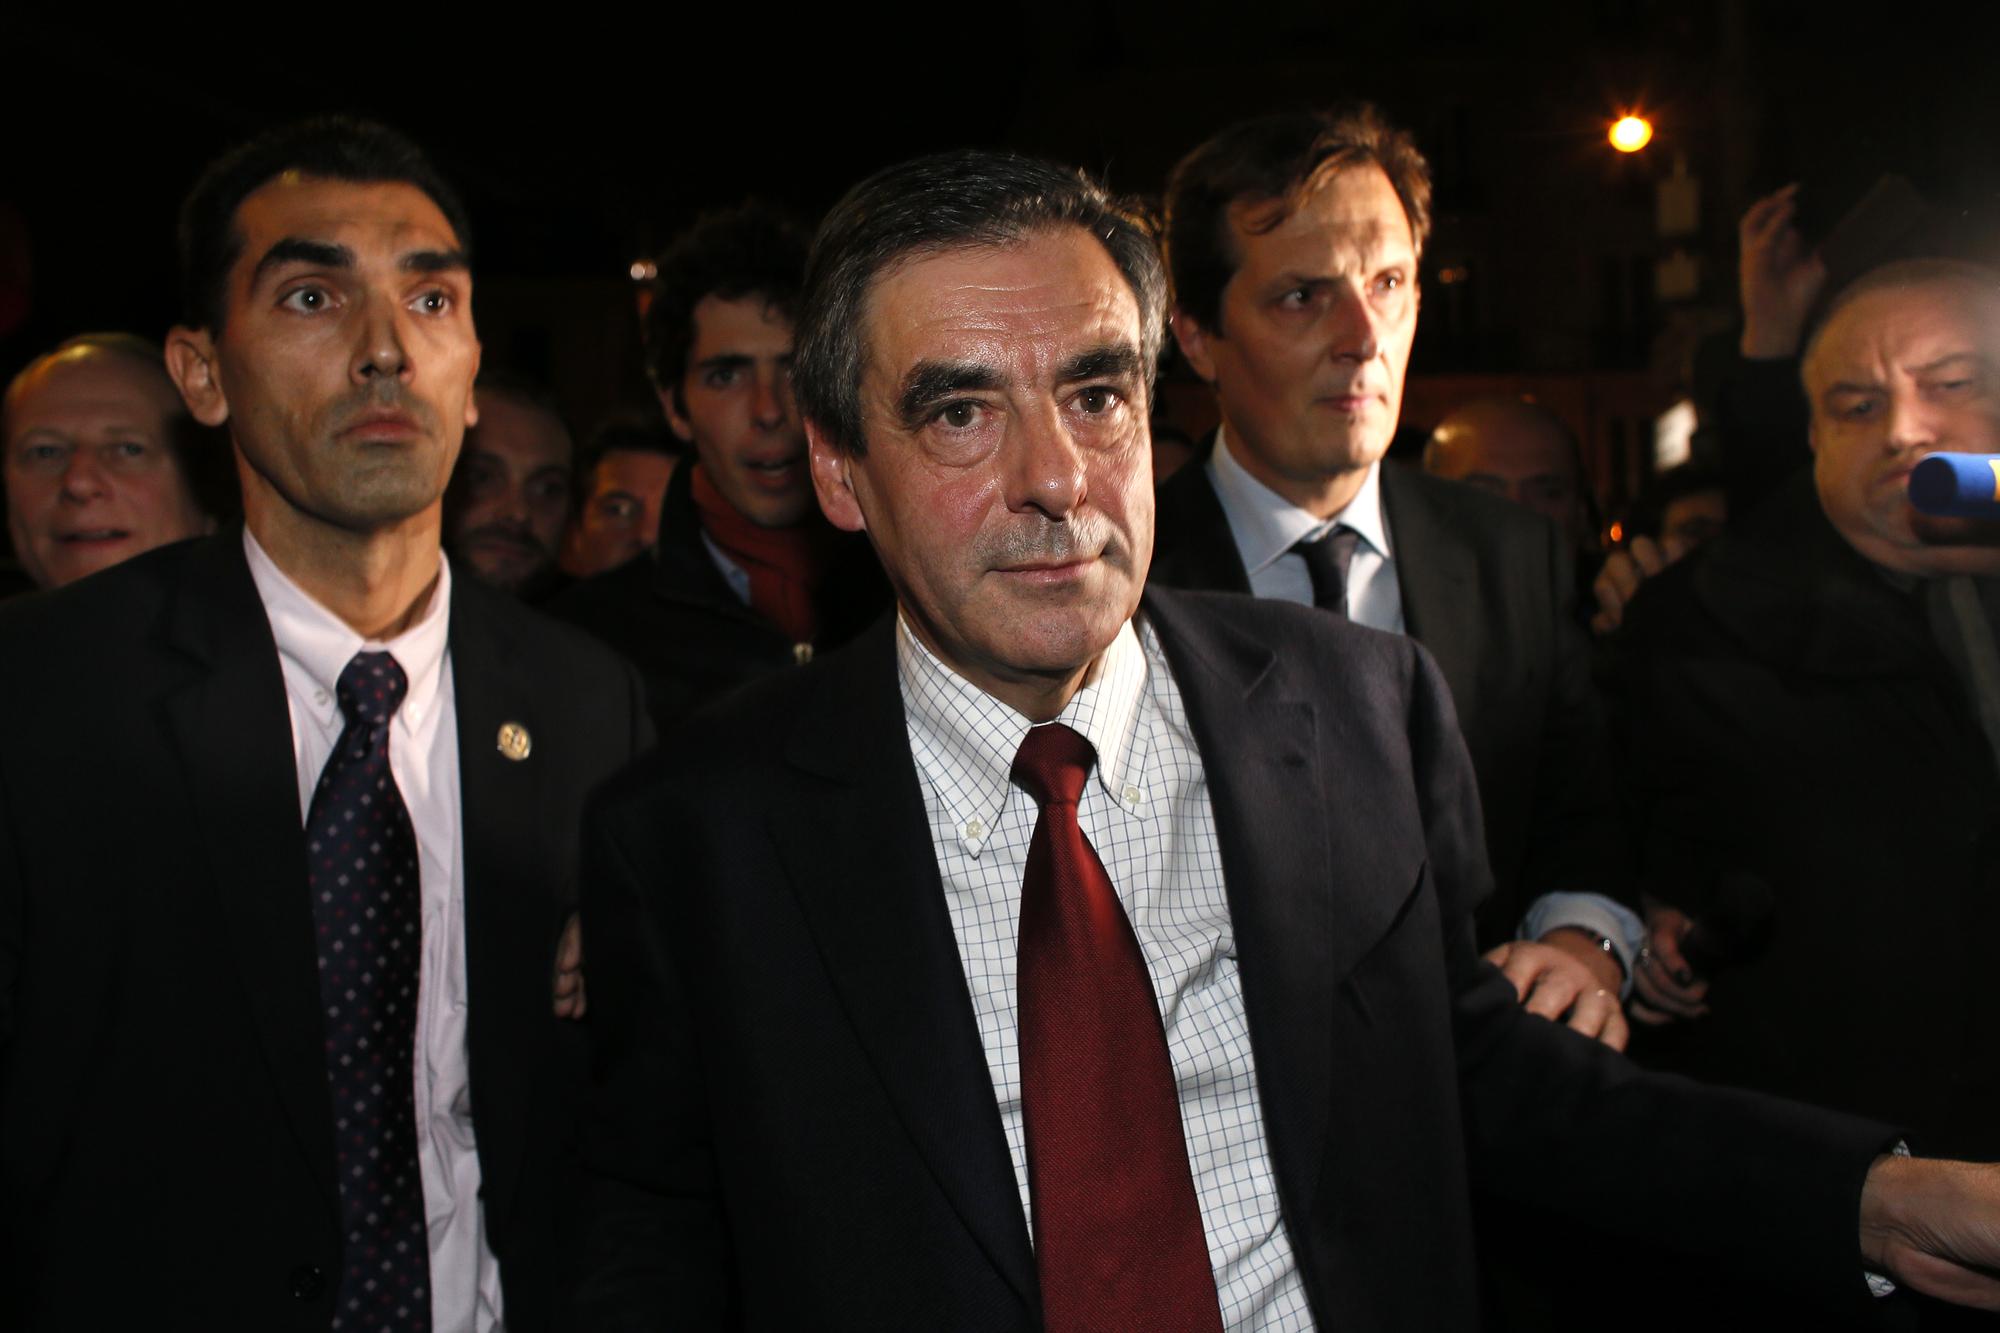 L'ancien Premier ministre François Fillon est arrivé vers 03h15 au siège de l'UMP pour exprimer son indignation.